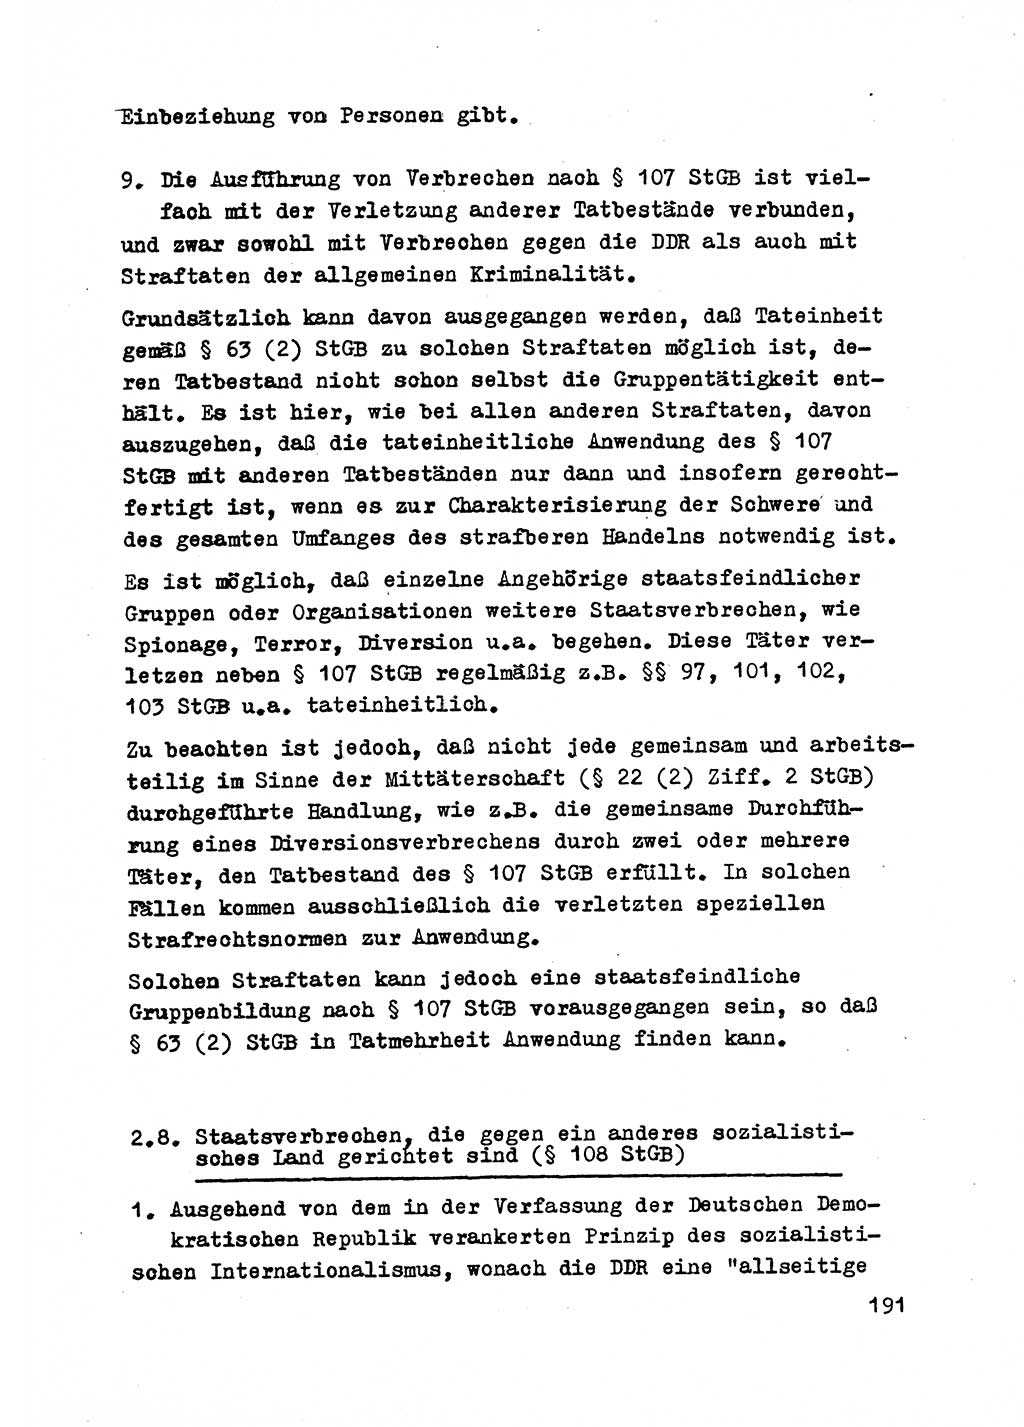 Strafrecht der DDR (Deutsche Demokratische Republik), Besonderer Teil, Lehrmaterial, Heft 2 1969, Seite 191 (Strafr. DDR BT Lehrmat. H. 2 1969, S. 191)